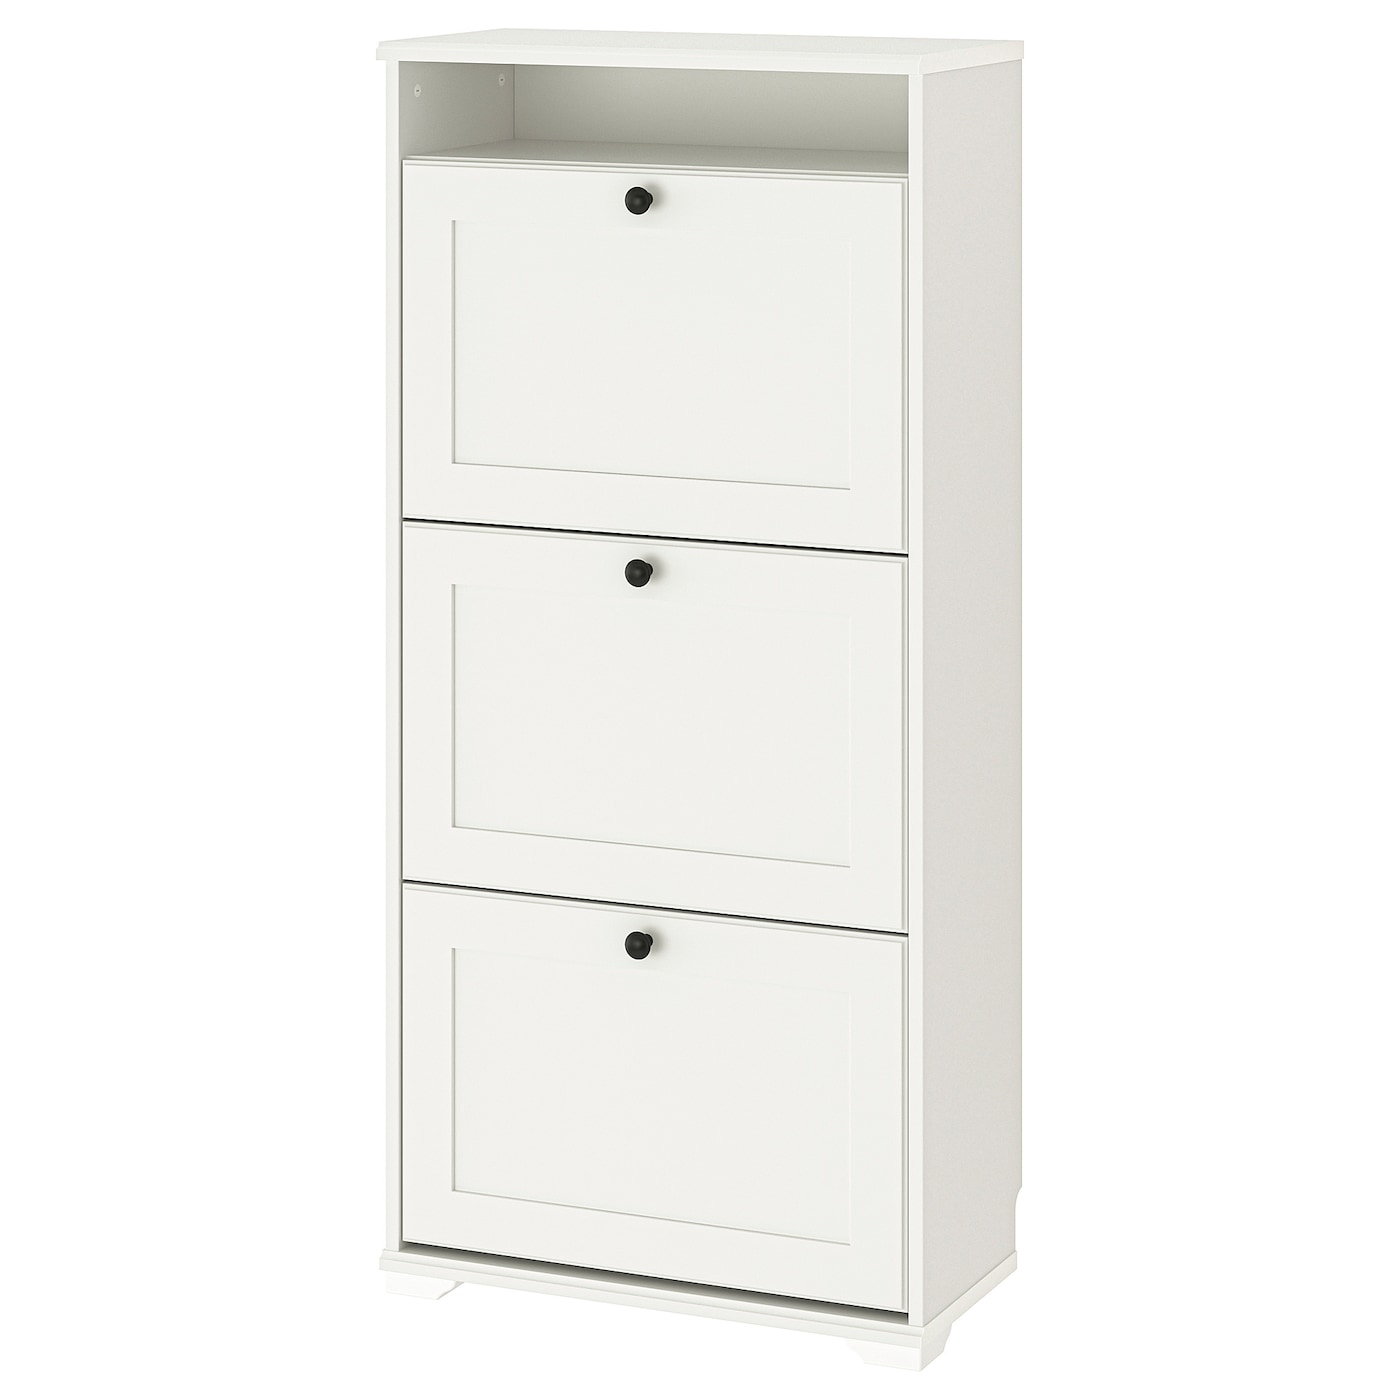 Обувница - IKEA BRUSALI/БРУСАЛИ ИКЕА, 130х30 см, белый